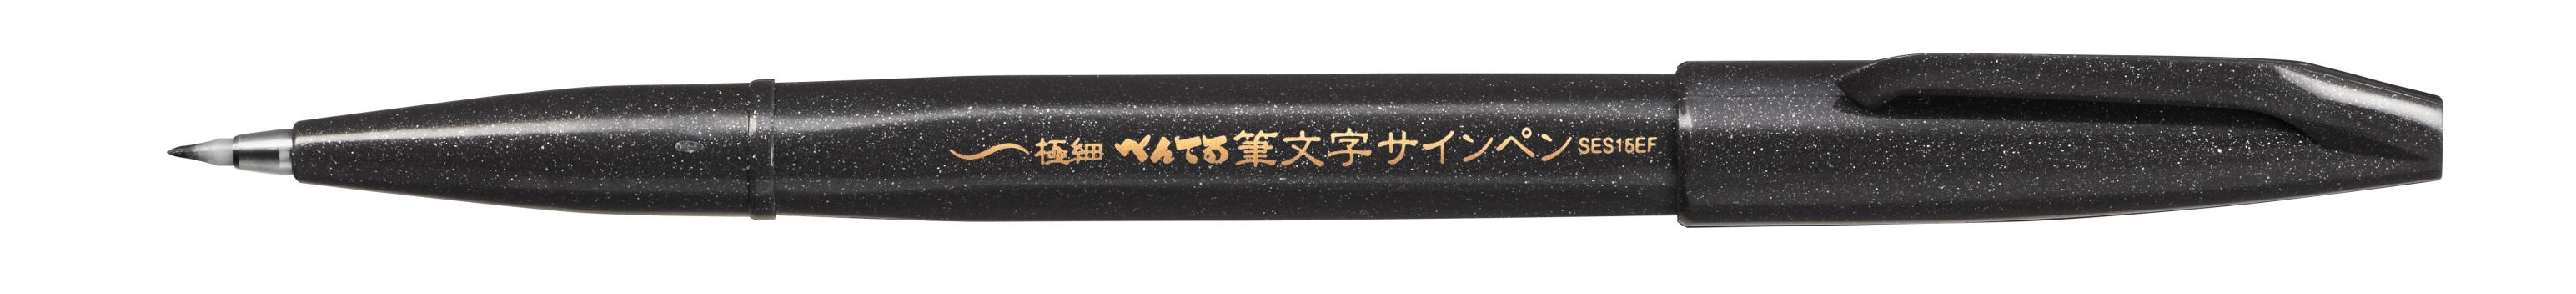 Фломастер-кисть Brush Sign Pen Extra Fine черный цвет (каллиграфия)